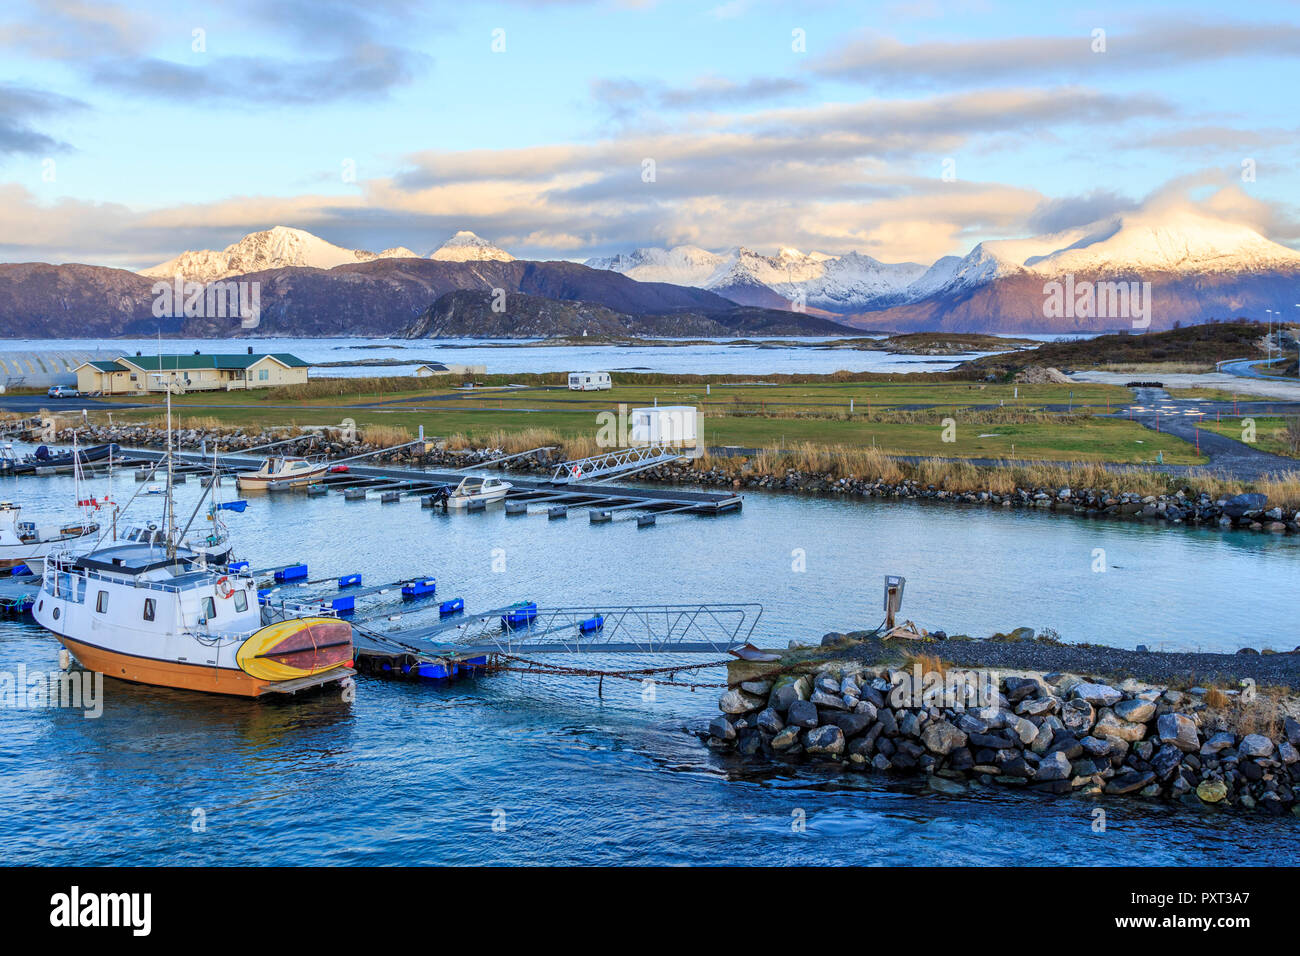 sommaroy island  landscape images taken on Kvaloya island Troms municipality, Near Tromso norway Stock Photo